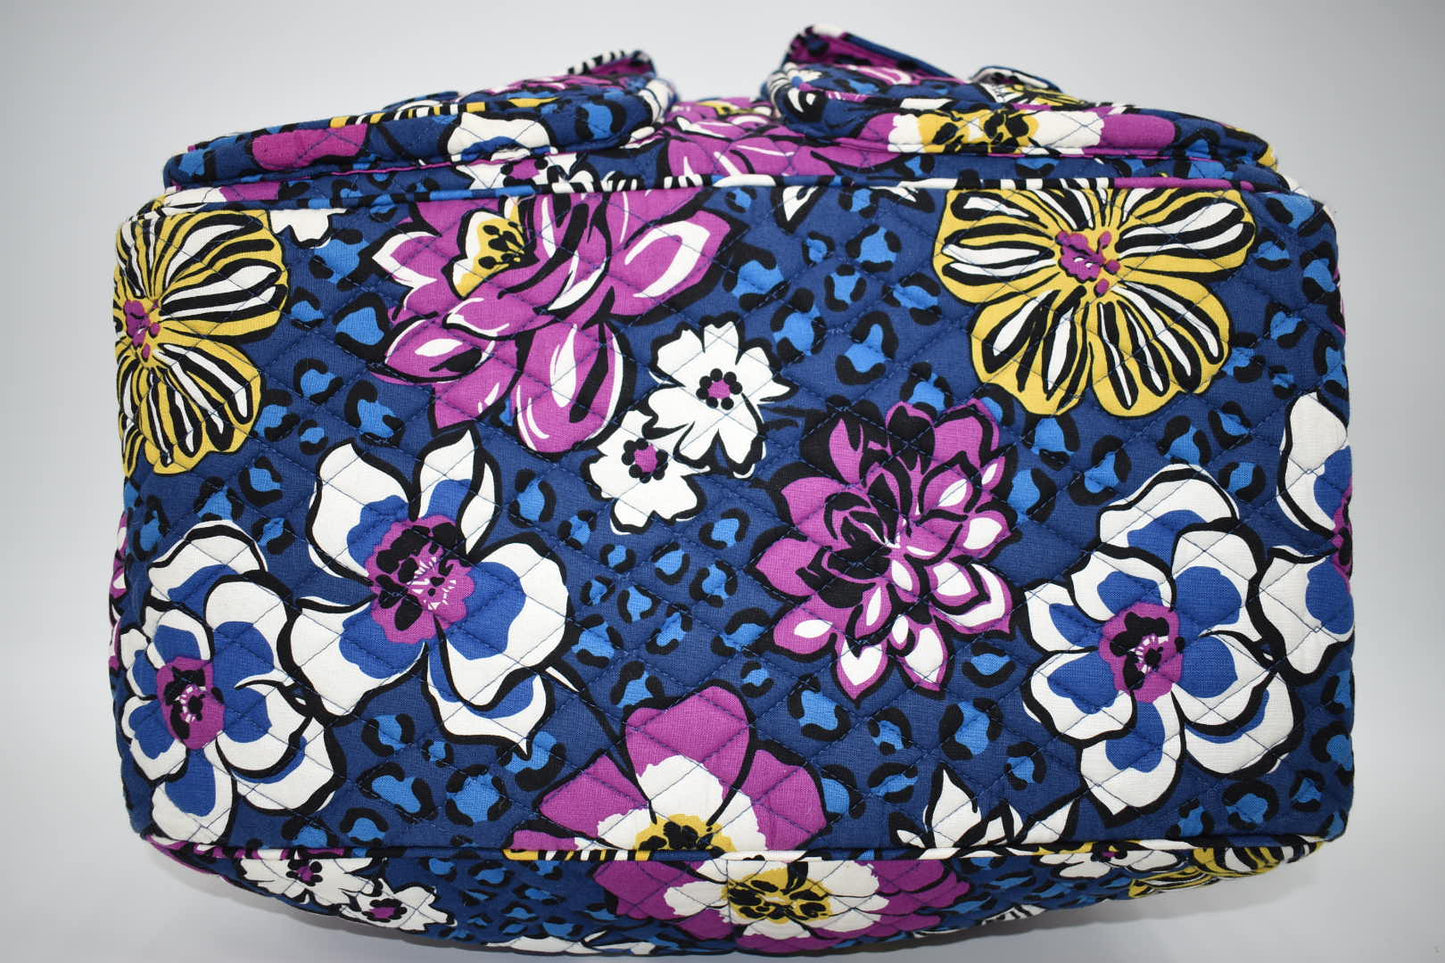 Vera Bradley Large Travel Bag in "African Violet" Pattern